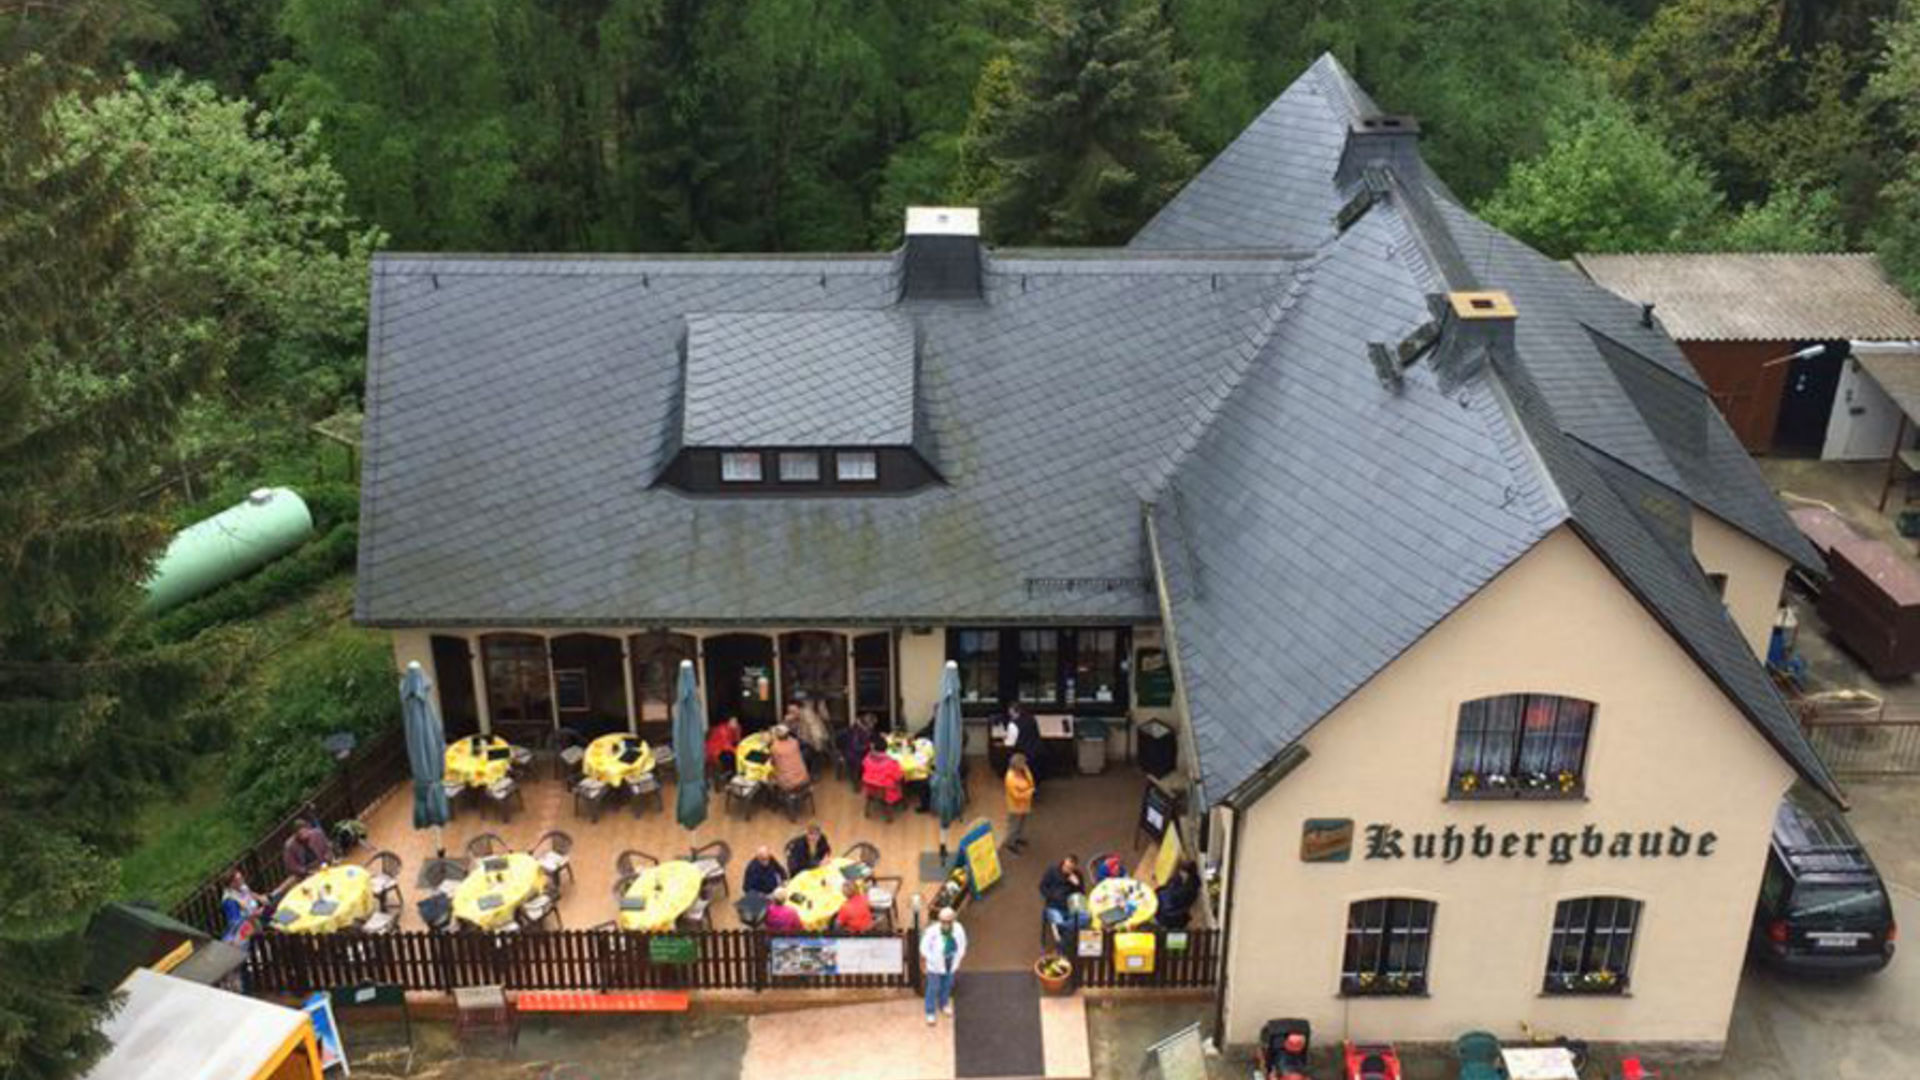 Blick vom Aussichtsturm auf die Gaststätte Kuhbergbaude 
© Gaststätte Kuhbergbaude